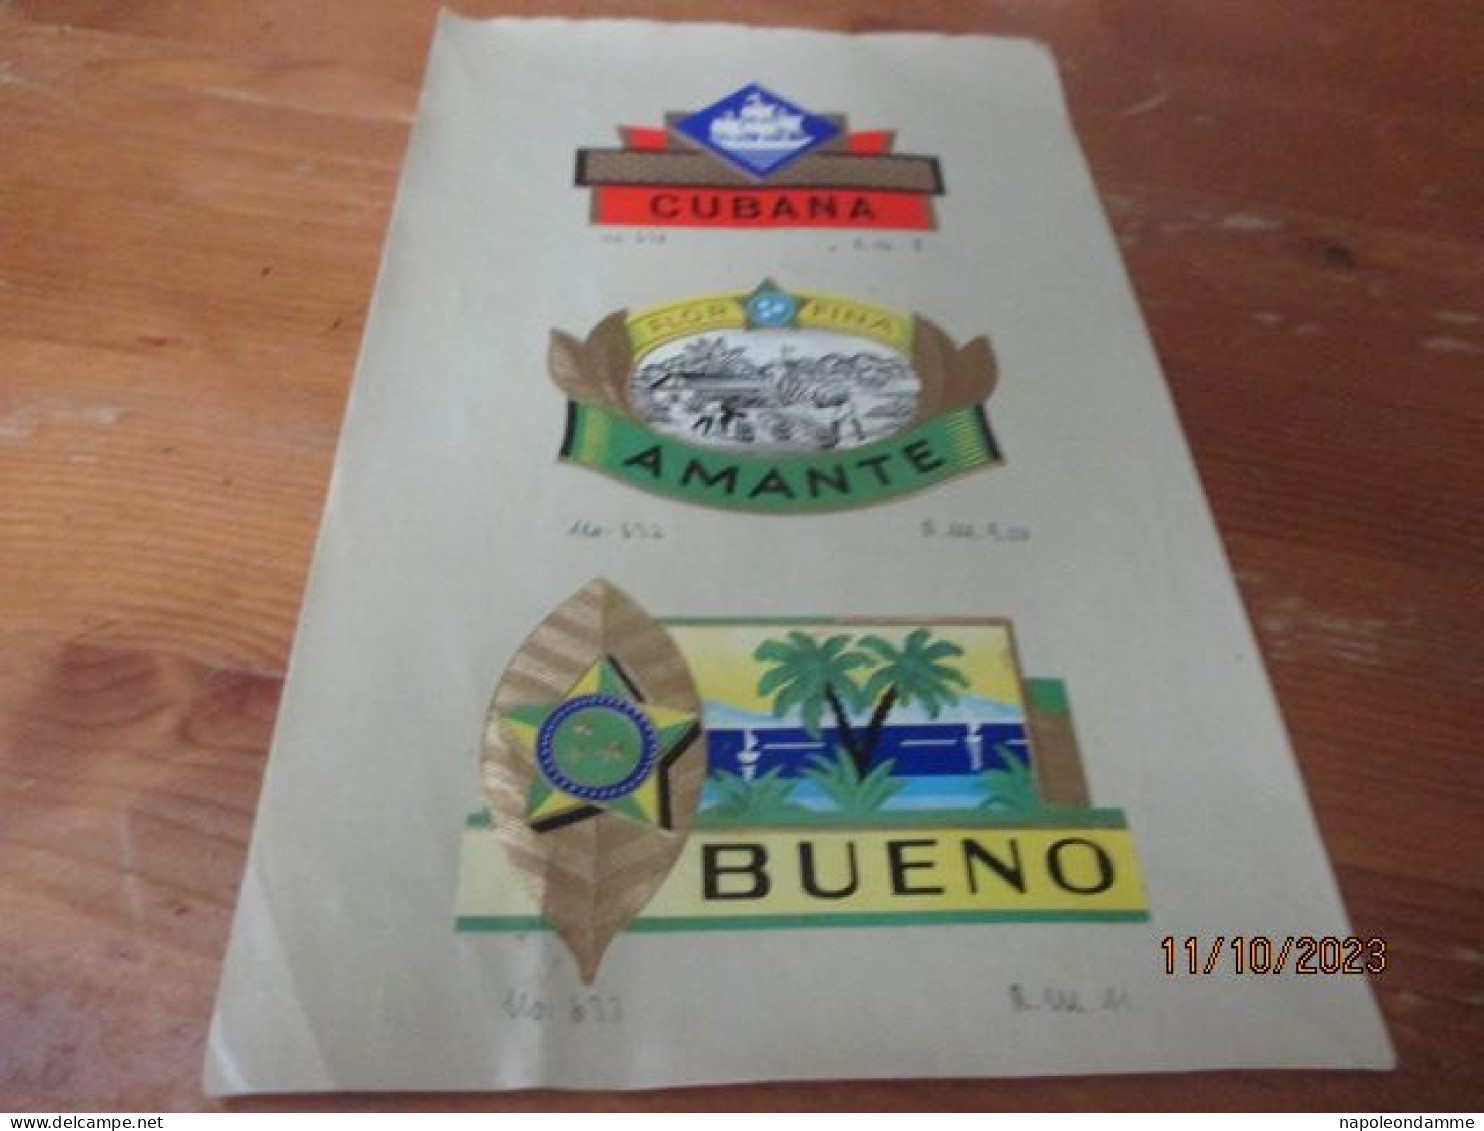 Etiketten Voorbeeldblad, 16 Cm X 25.50cm, Cubana, Amante, Bueno - Etiquettes